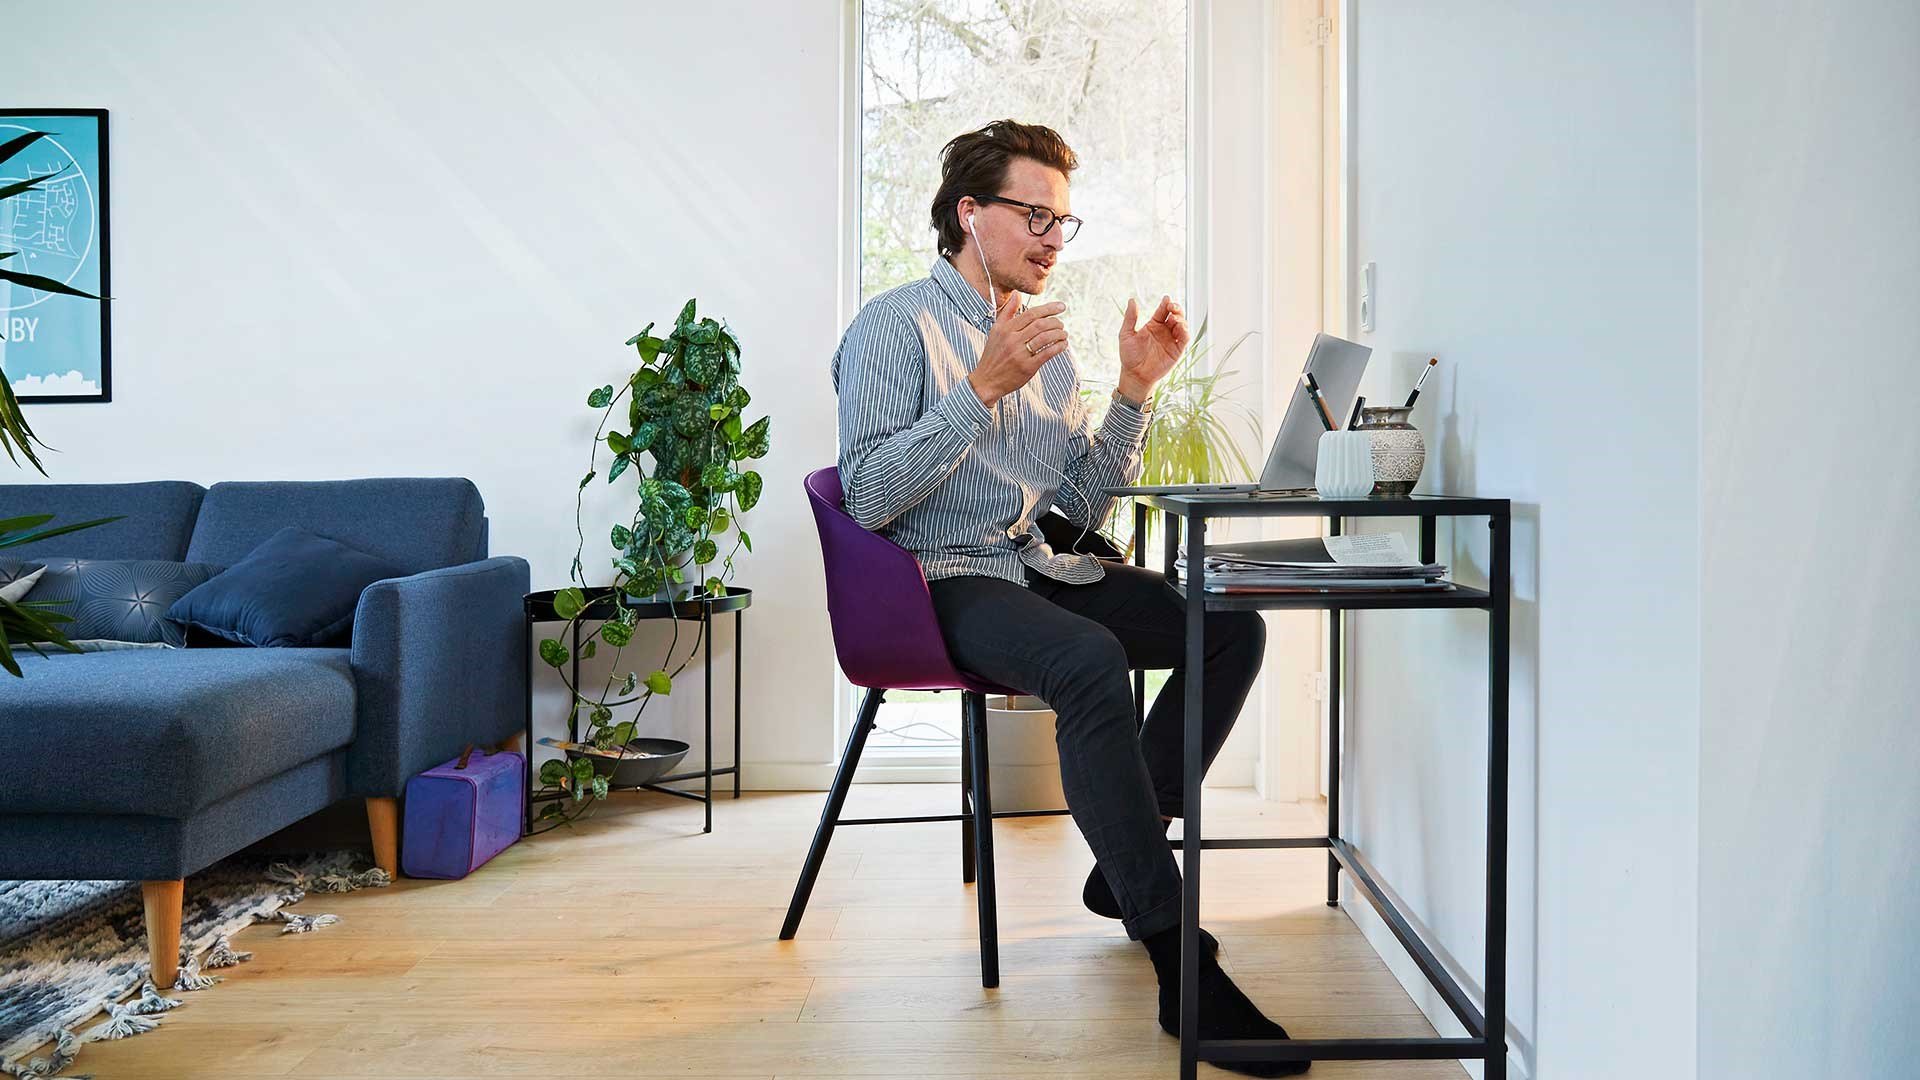 Mand sidder foran pc på sit hjemmekontor og afholder online møder. Han har fået gode råd til, hvordan han afholder online møder